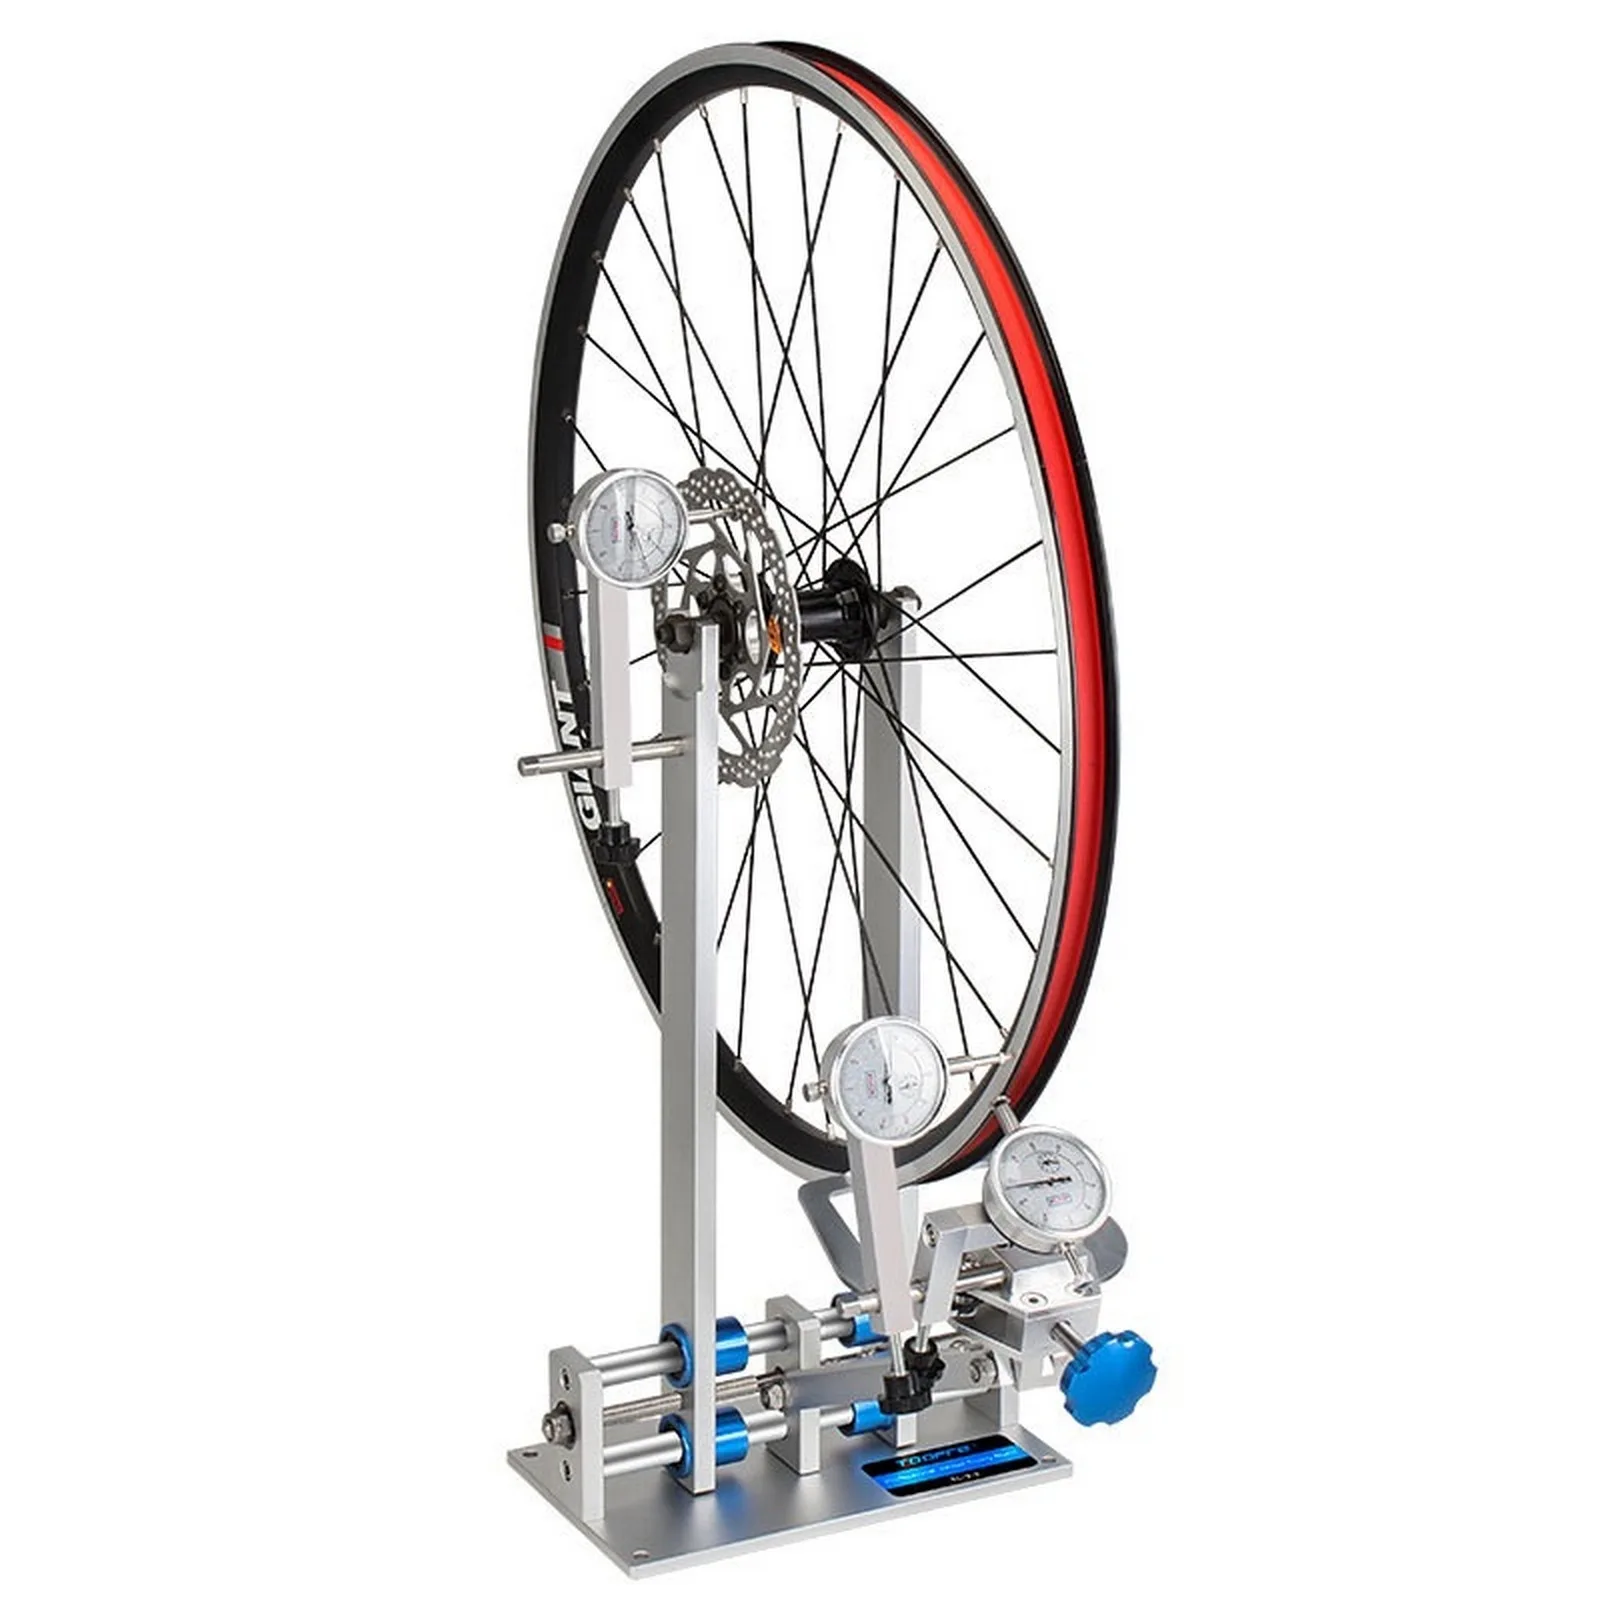 

Профессиональная подставка для колес велосипеда, подставка для регулировки шин, инструменты для ремонта и калибровки шин